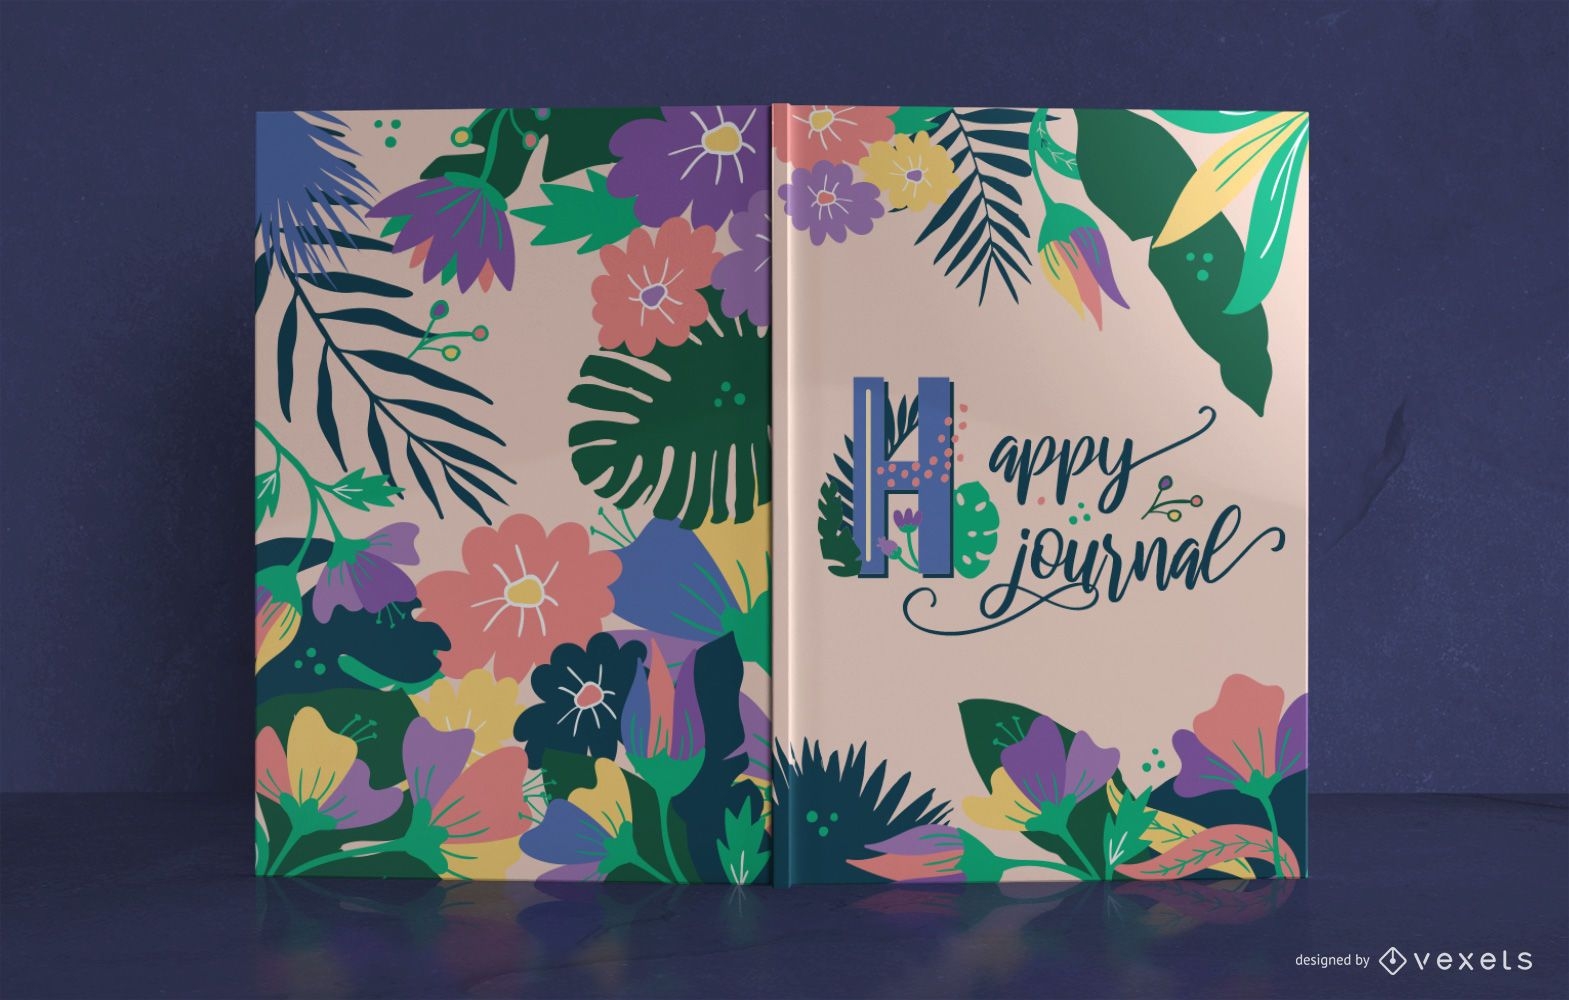 Design des tropischen Journal-Buchcovers